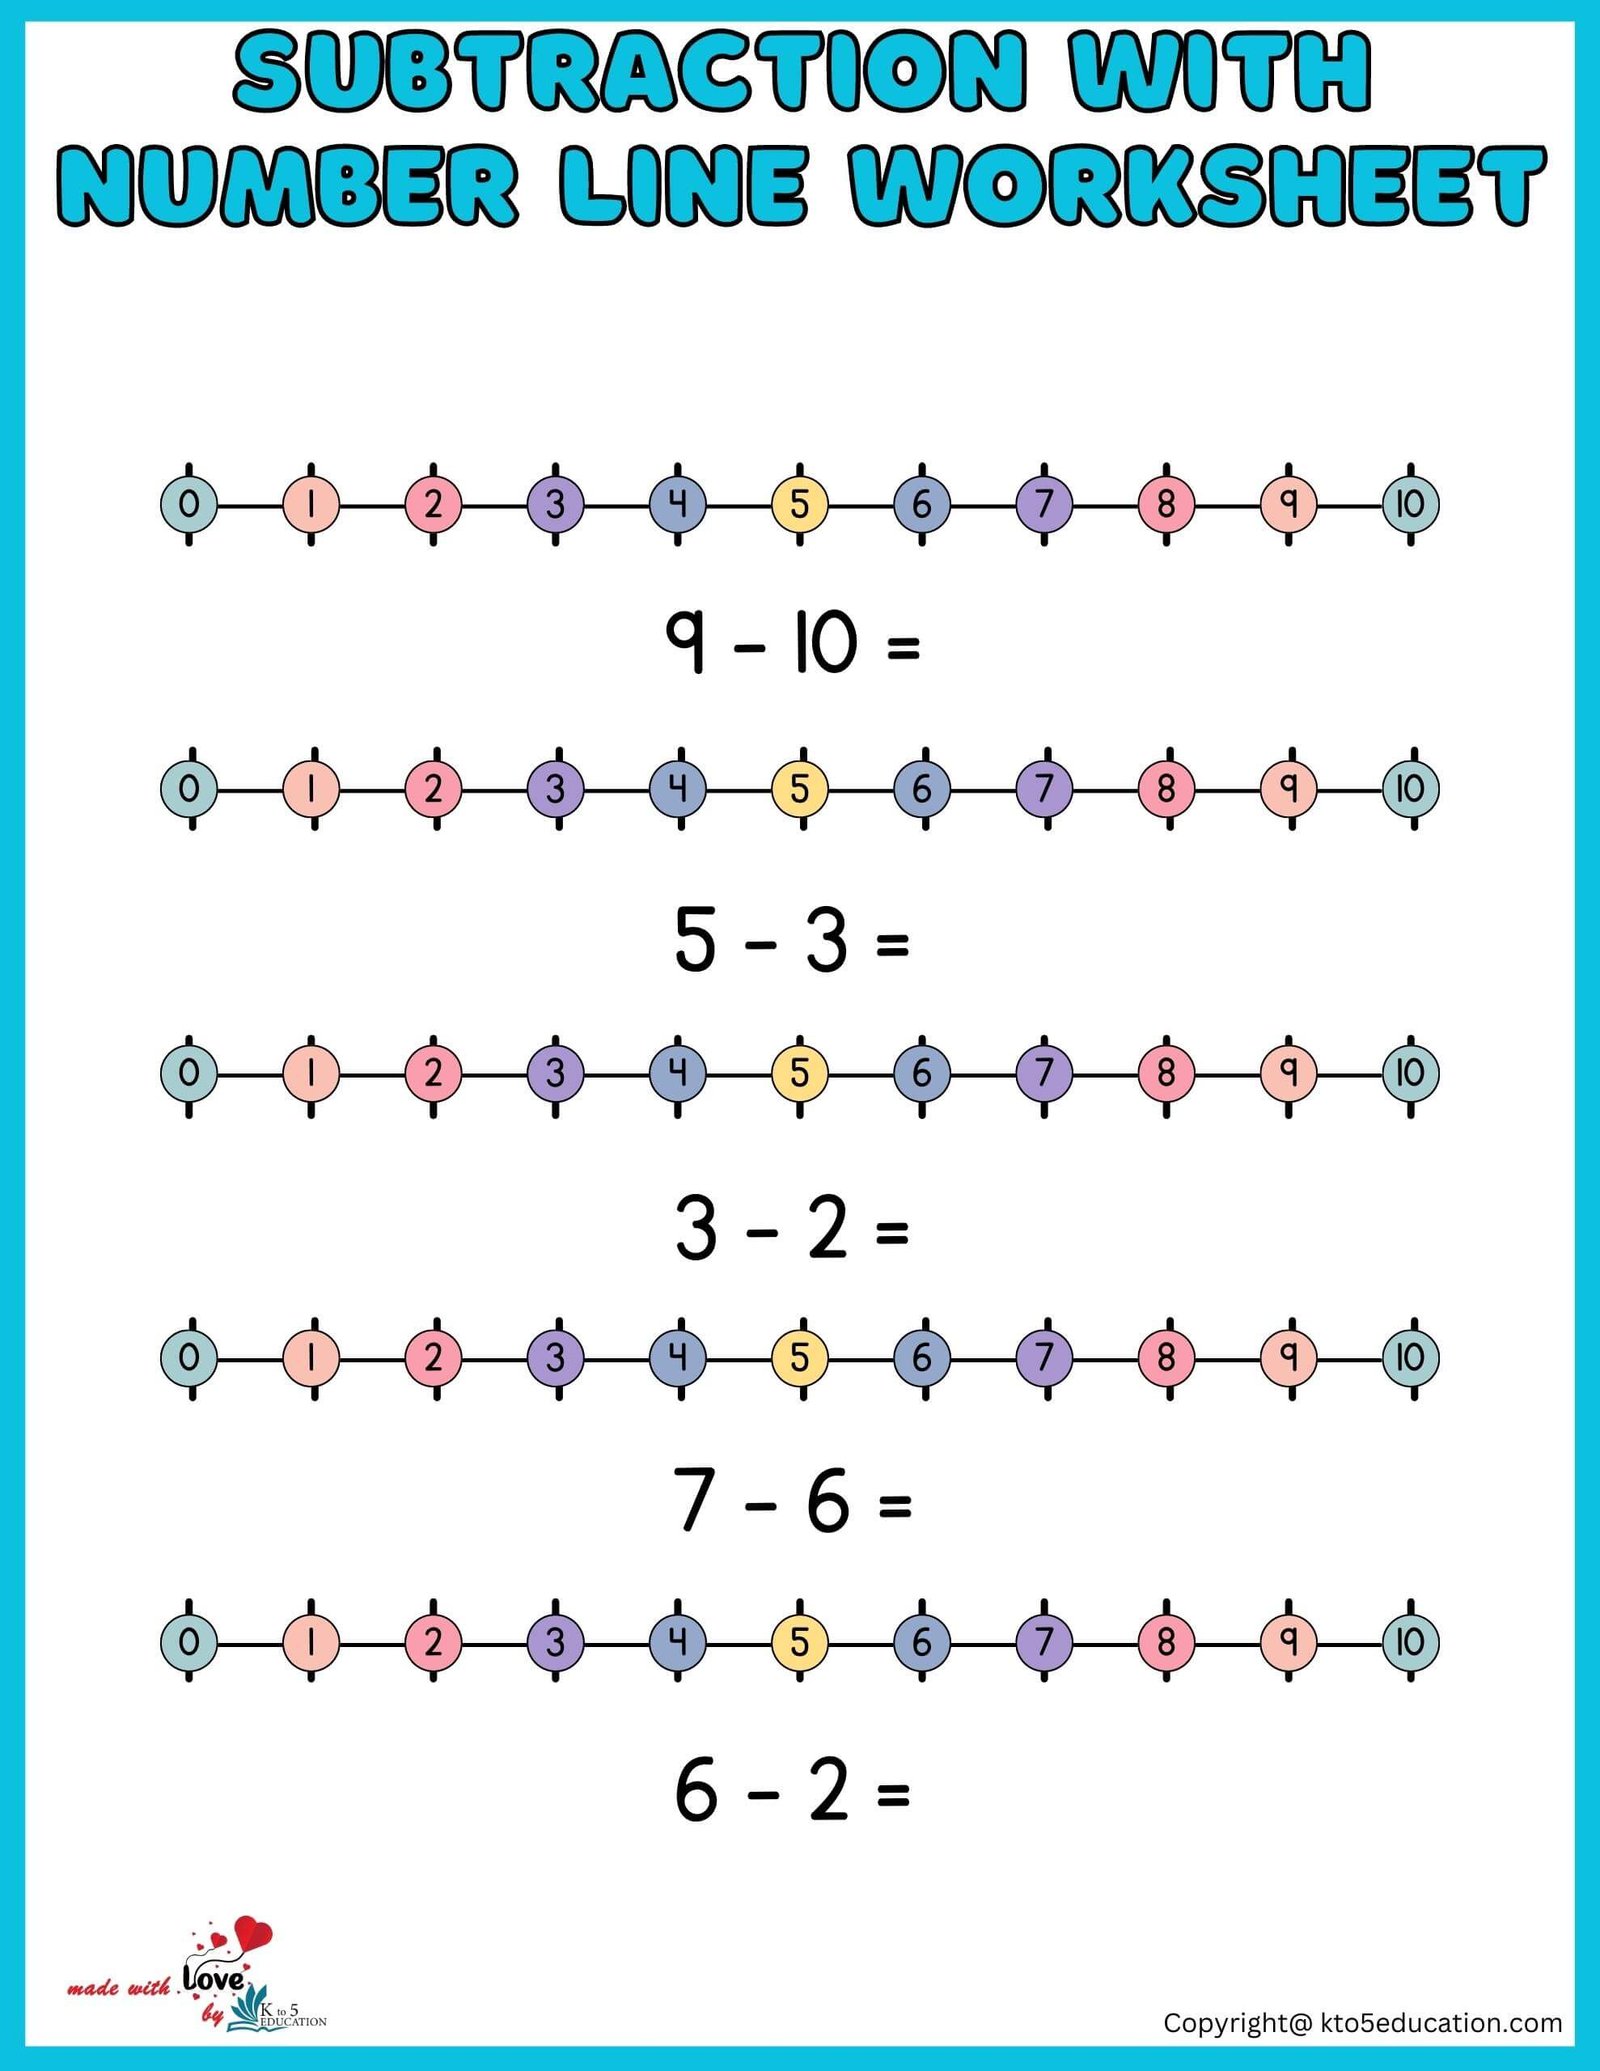 Number Line Worksheet First Grade